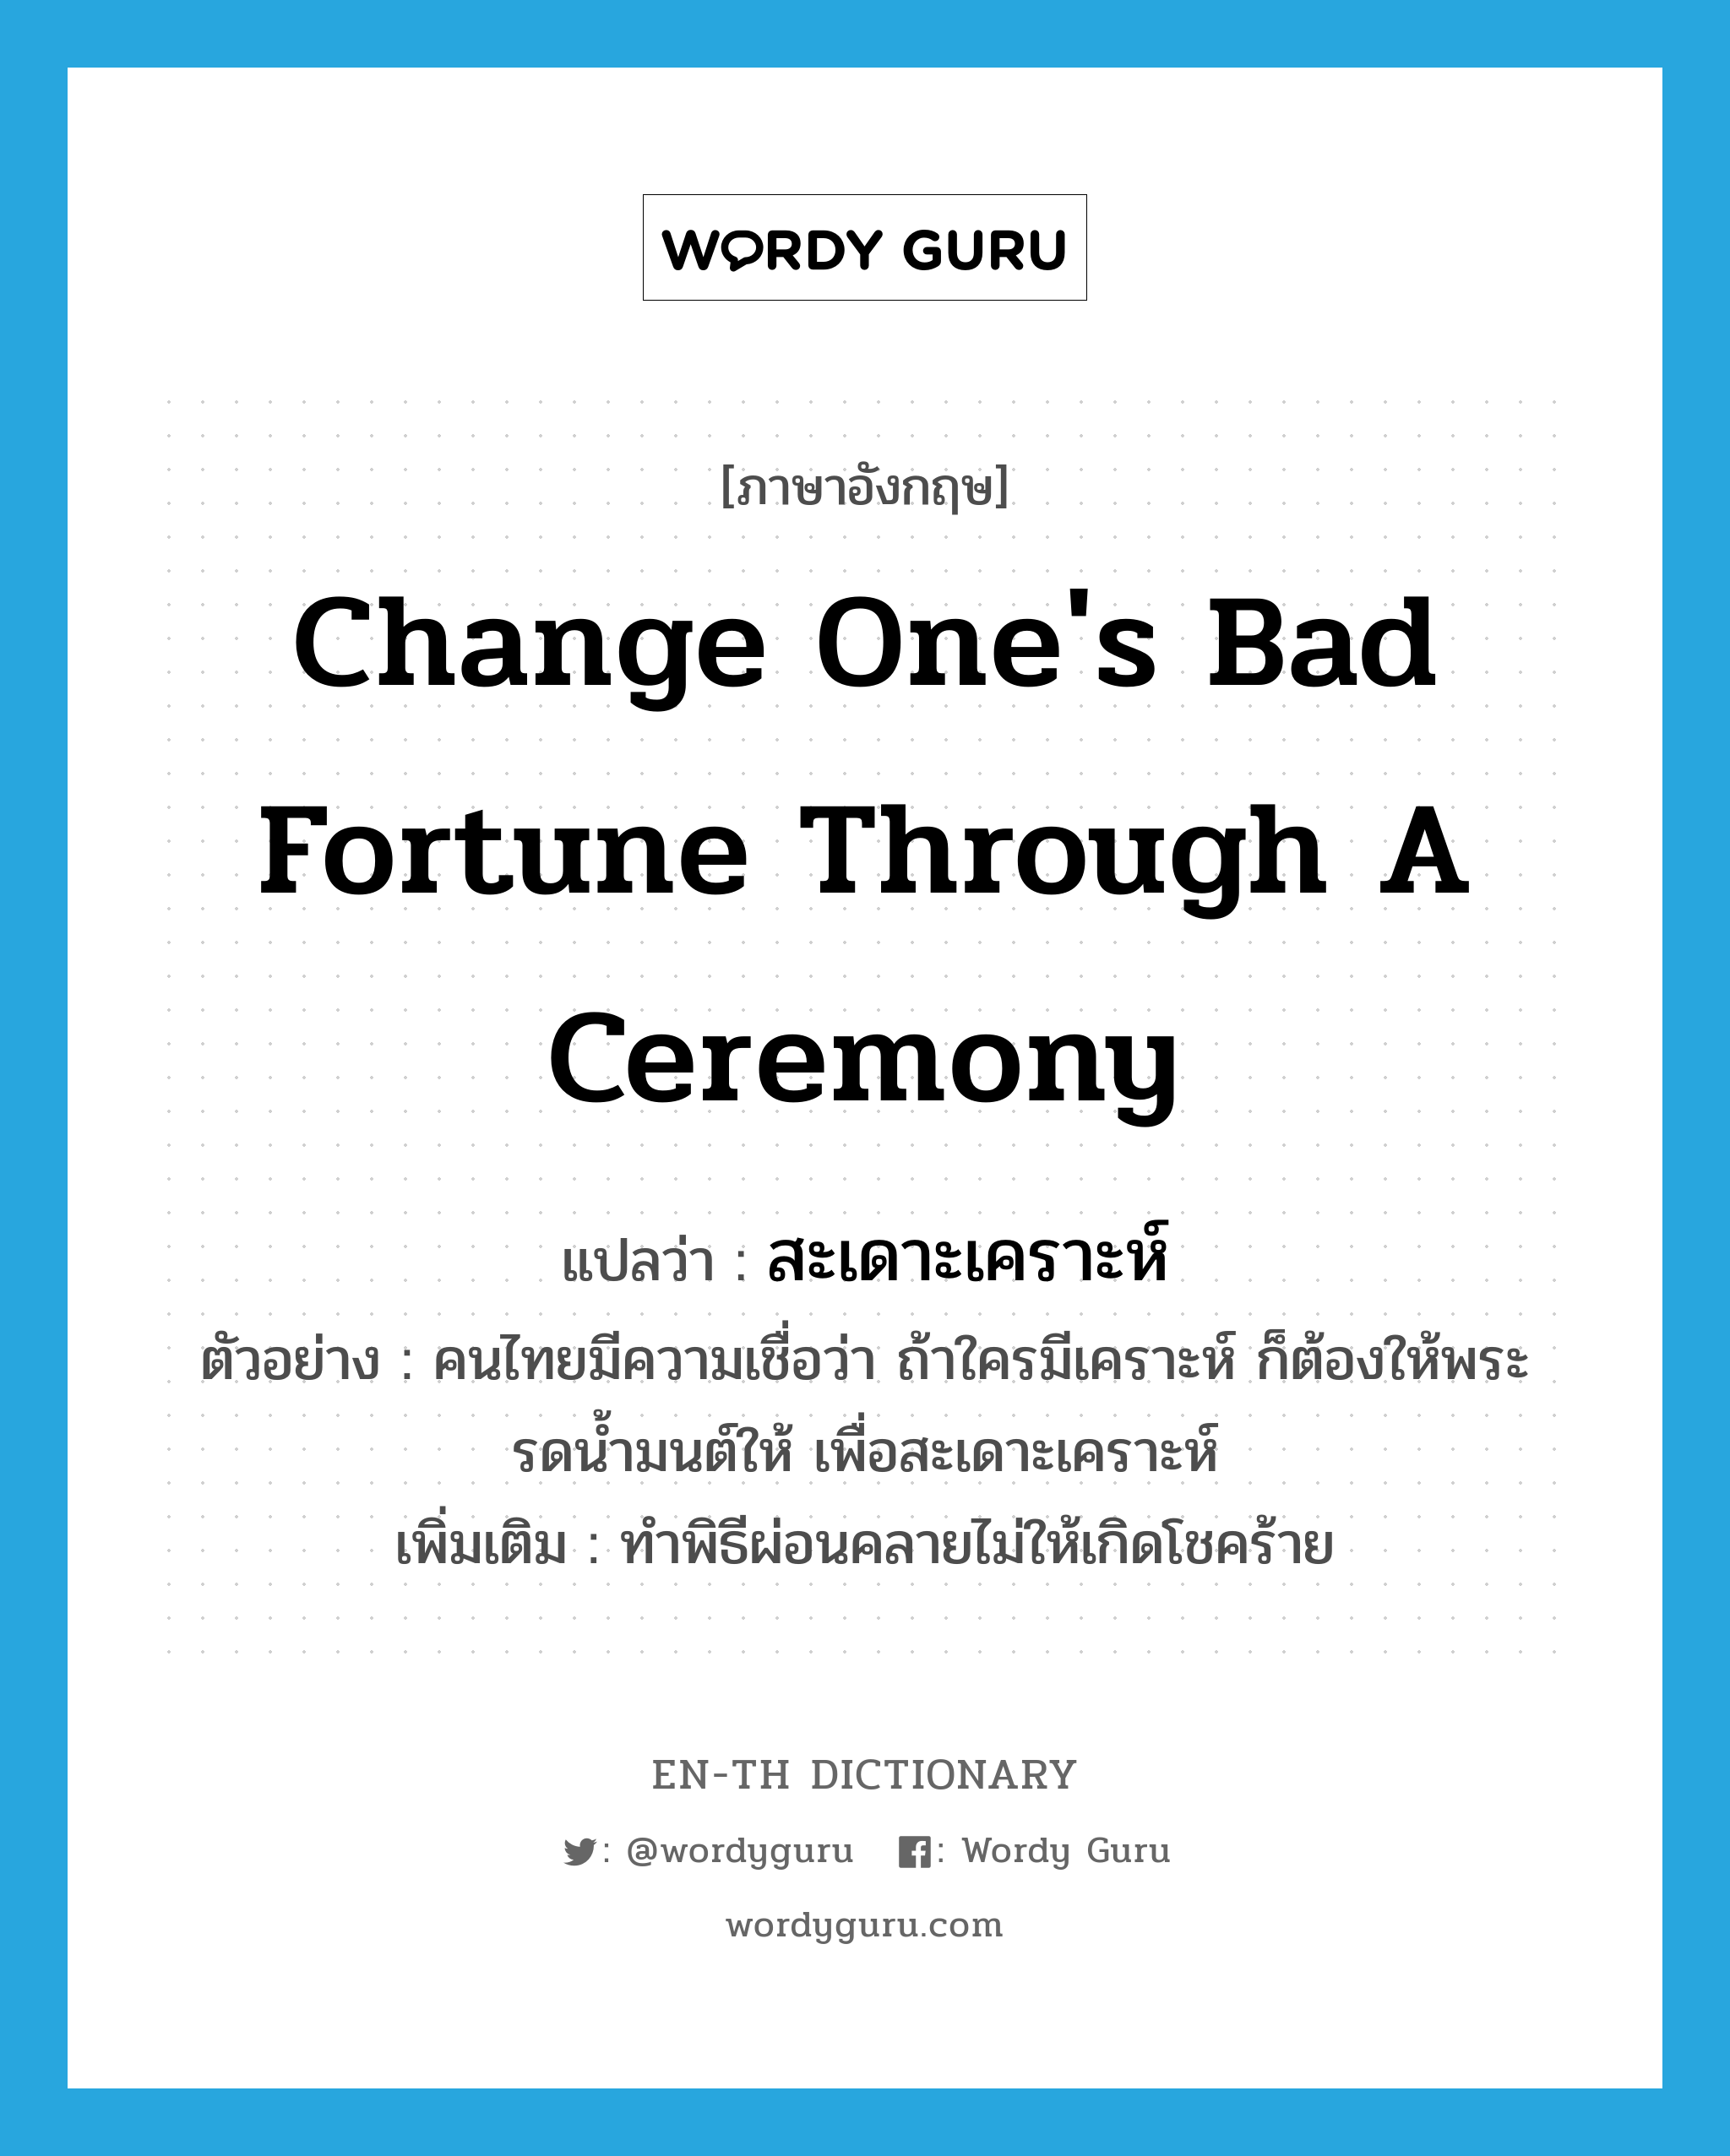 สะเดาะเคราะห์ ภาษาอังกฤษ?, คำศัพท์ภาษาอังกฤษ สะเดาะเคราะห์ แปลว่า change one's bad fortune through a ceremony ประเภท V ตัวอย่าง คนไทยมีความเชื่อว่า ถ้าใครมีเคราะห์ ก็ต้องให้พระรดน้ำมนต์ให้ เพื่อสะเดาะเคราะห์ เพิ่มเติม ทำพิธีผ่อนคลายไม่ให้เกิดโชคร้าย หมวด V